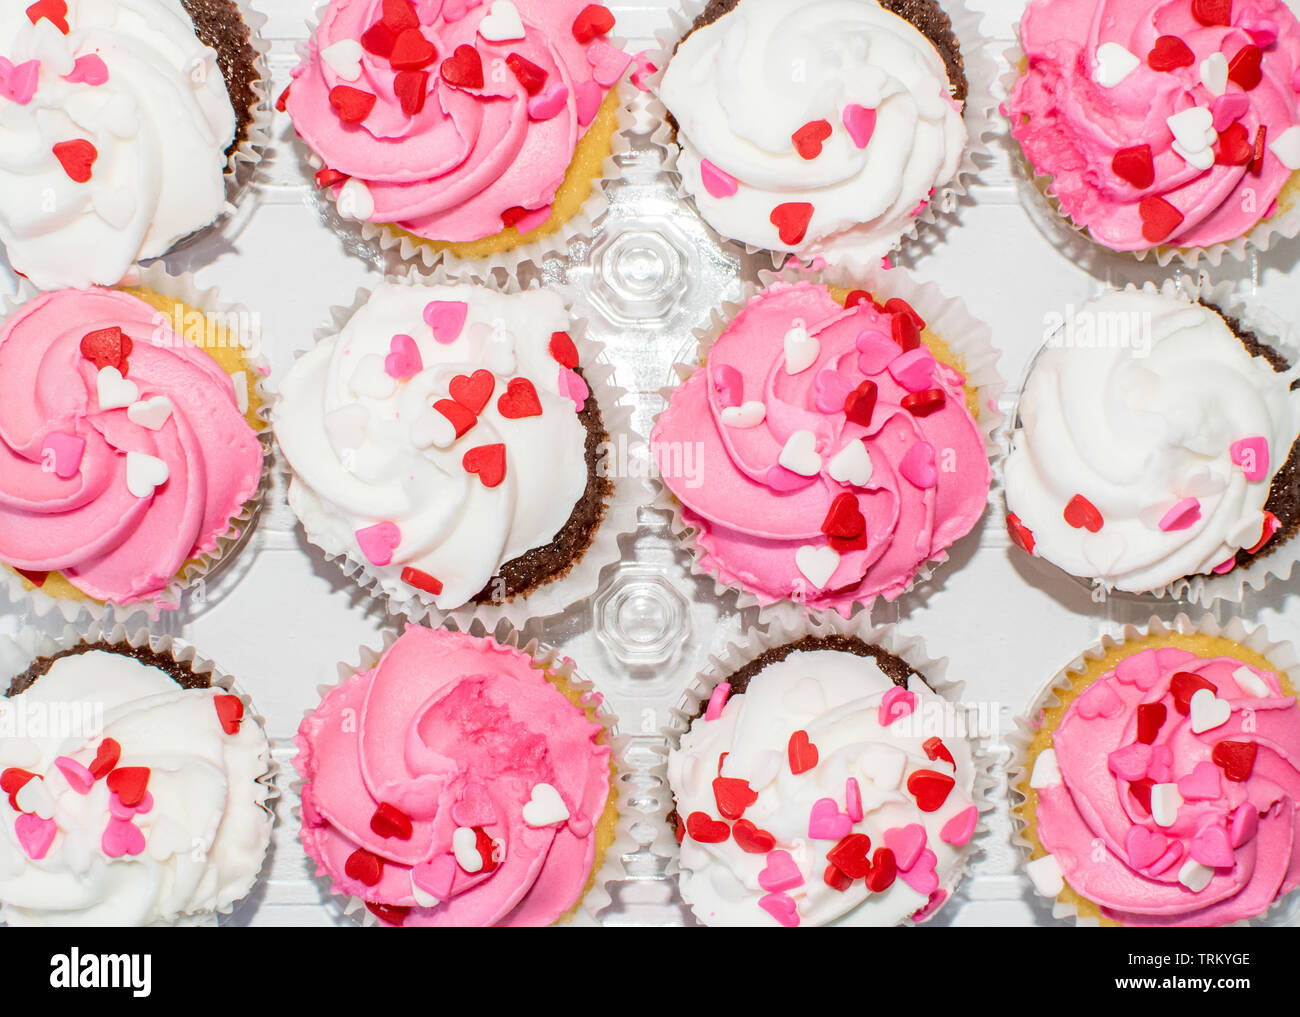 Vista superior de organiza en color rosa y blanco crema glaseado cupcakes decoradas con corazón sprinkles Foto de stock